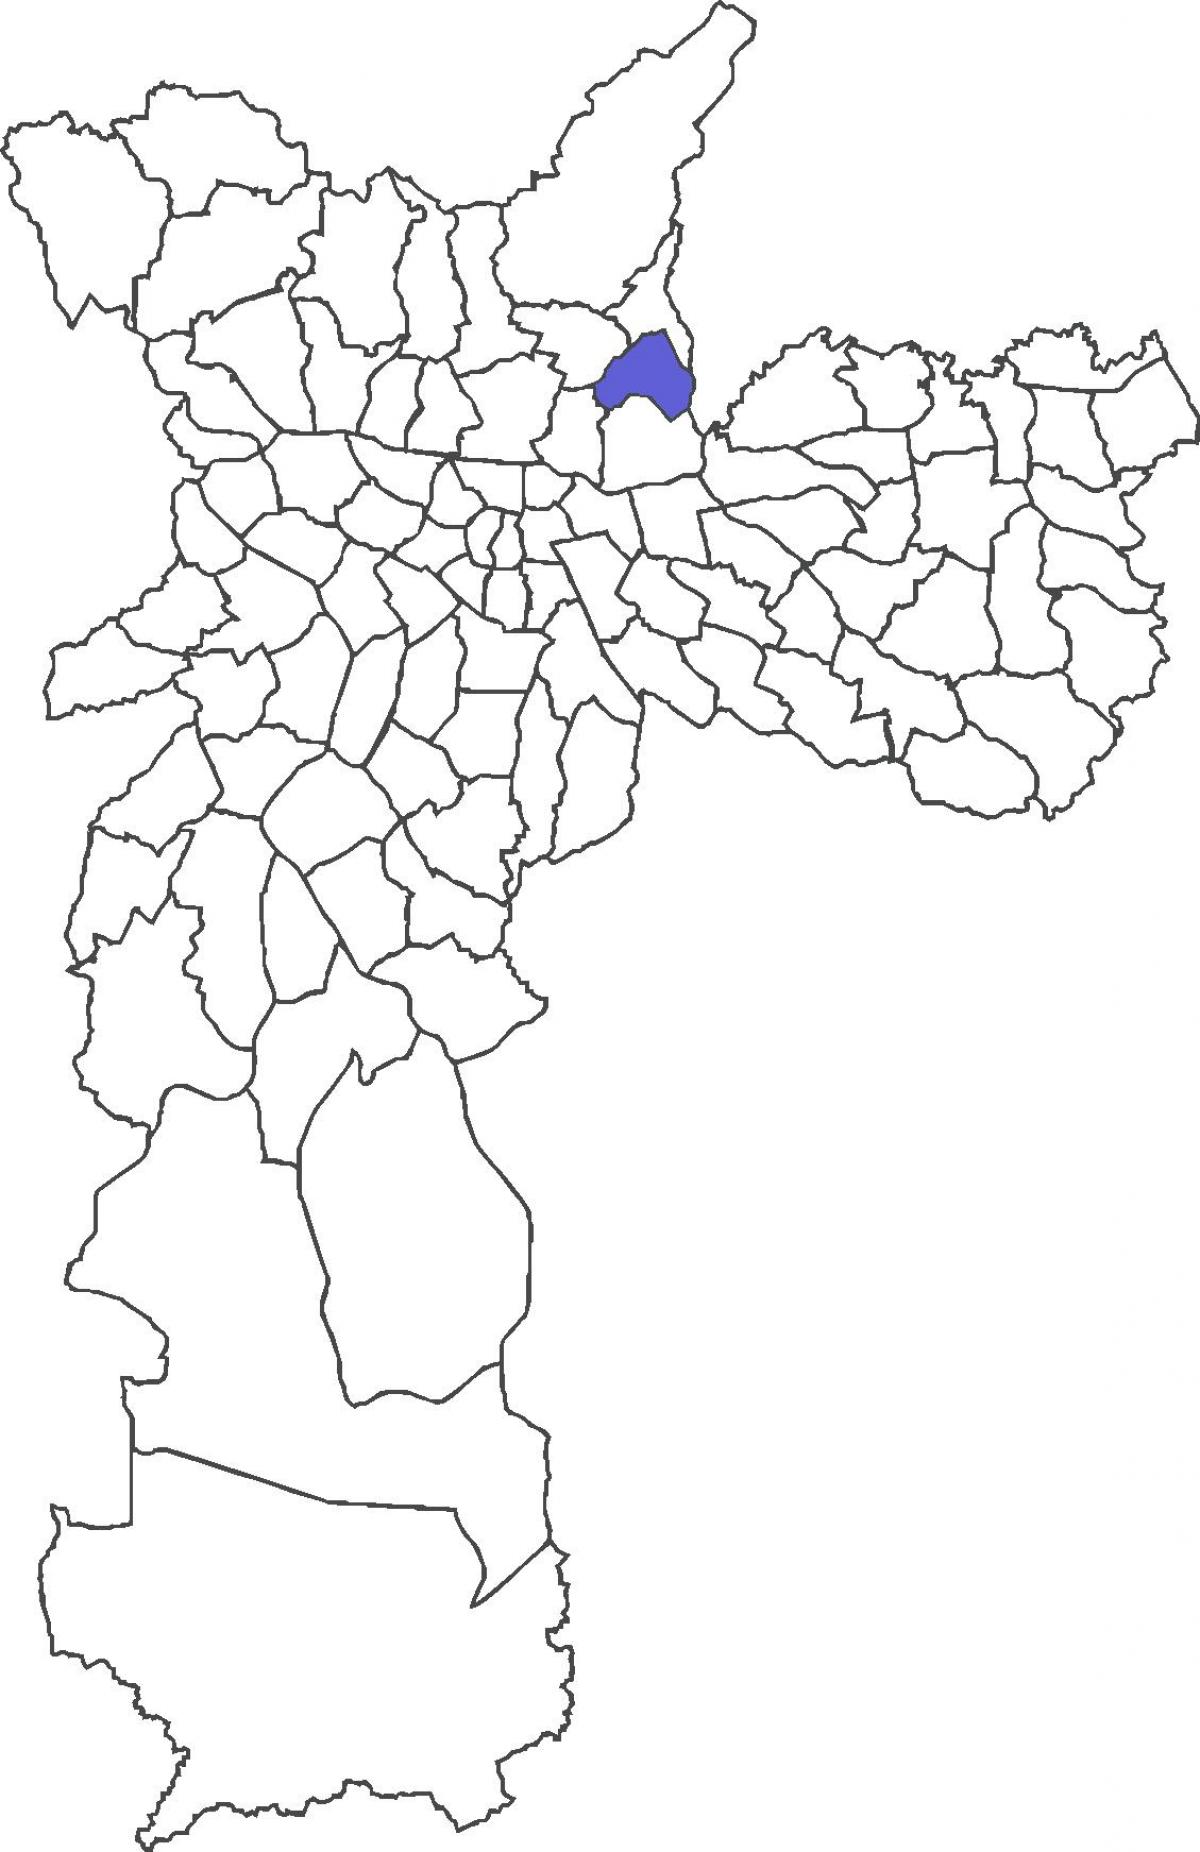 რუკა Vila Medeiros უბანი